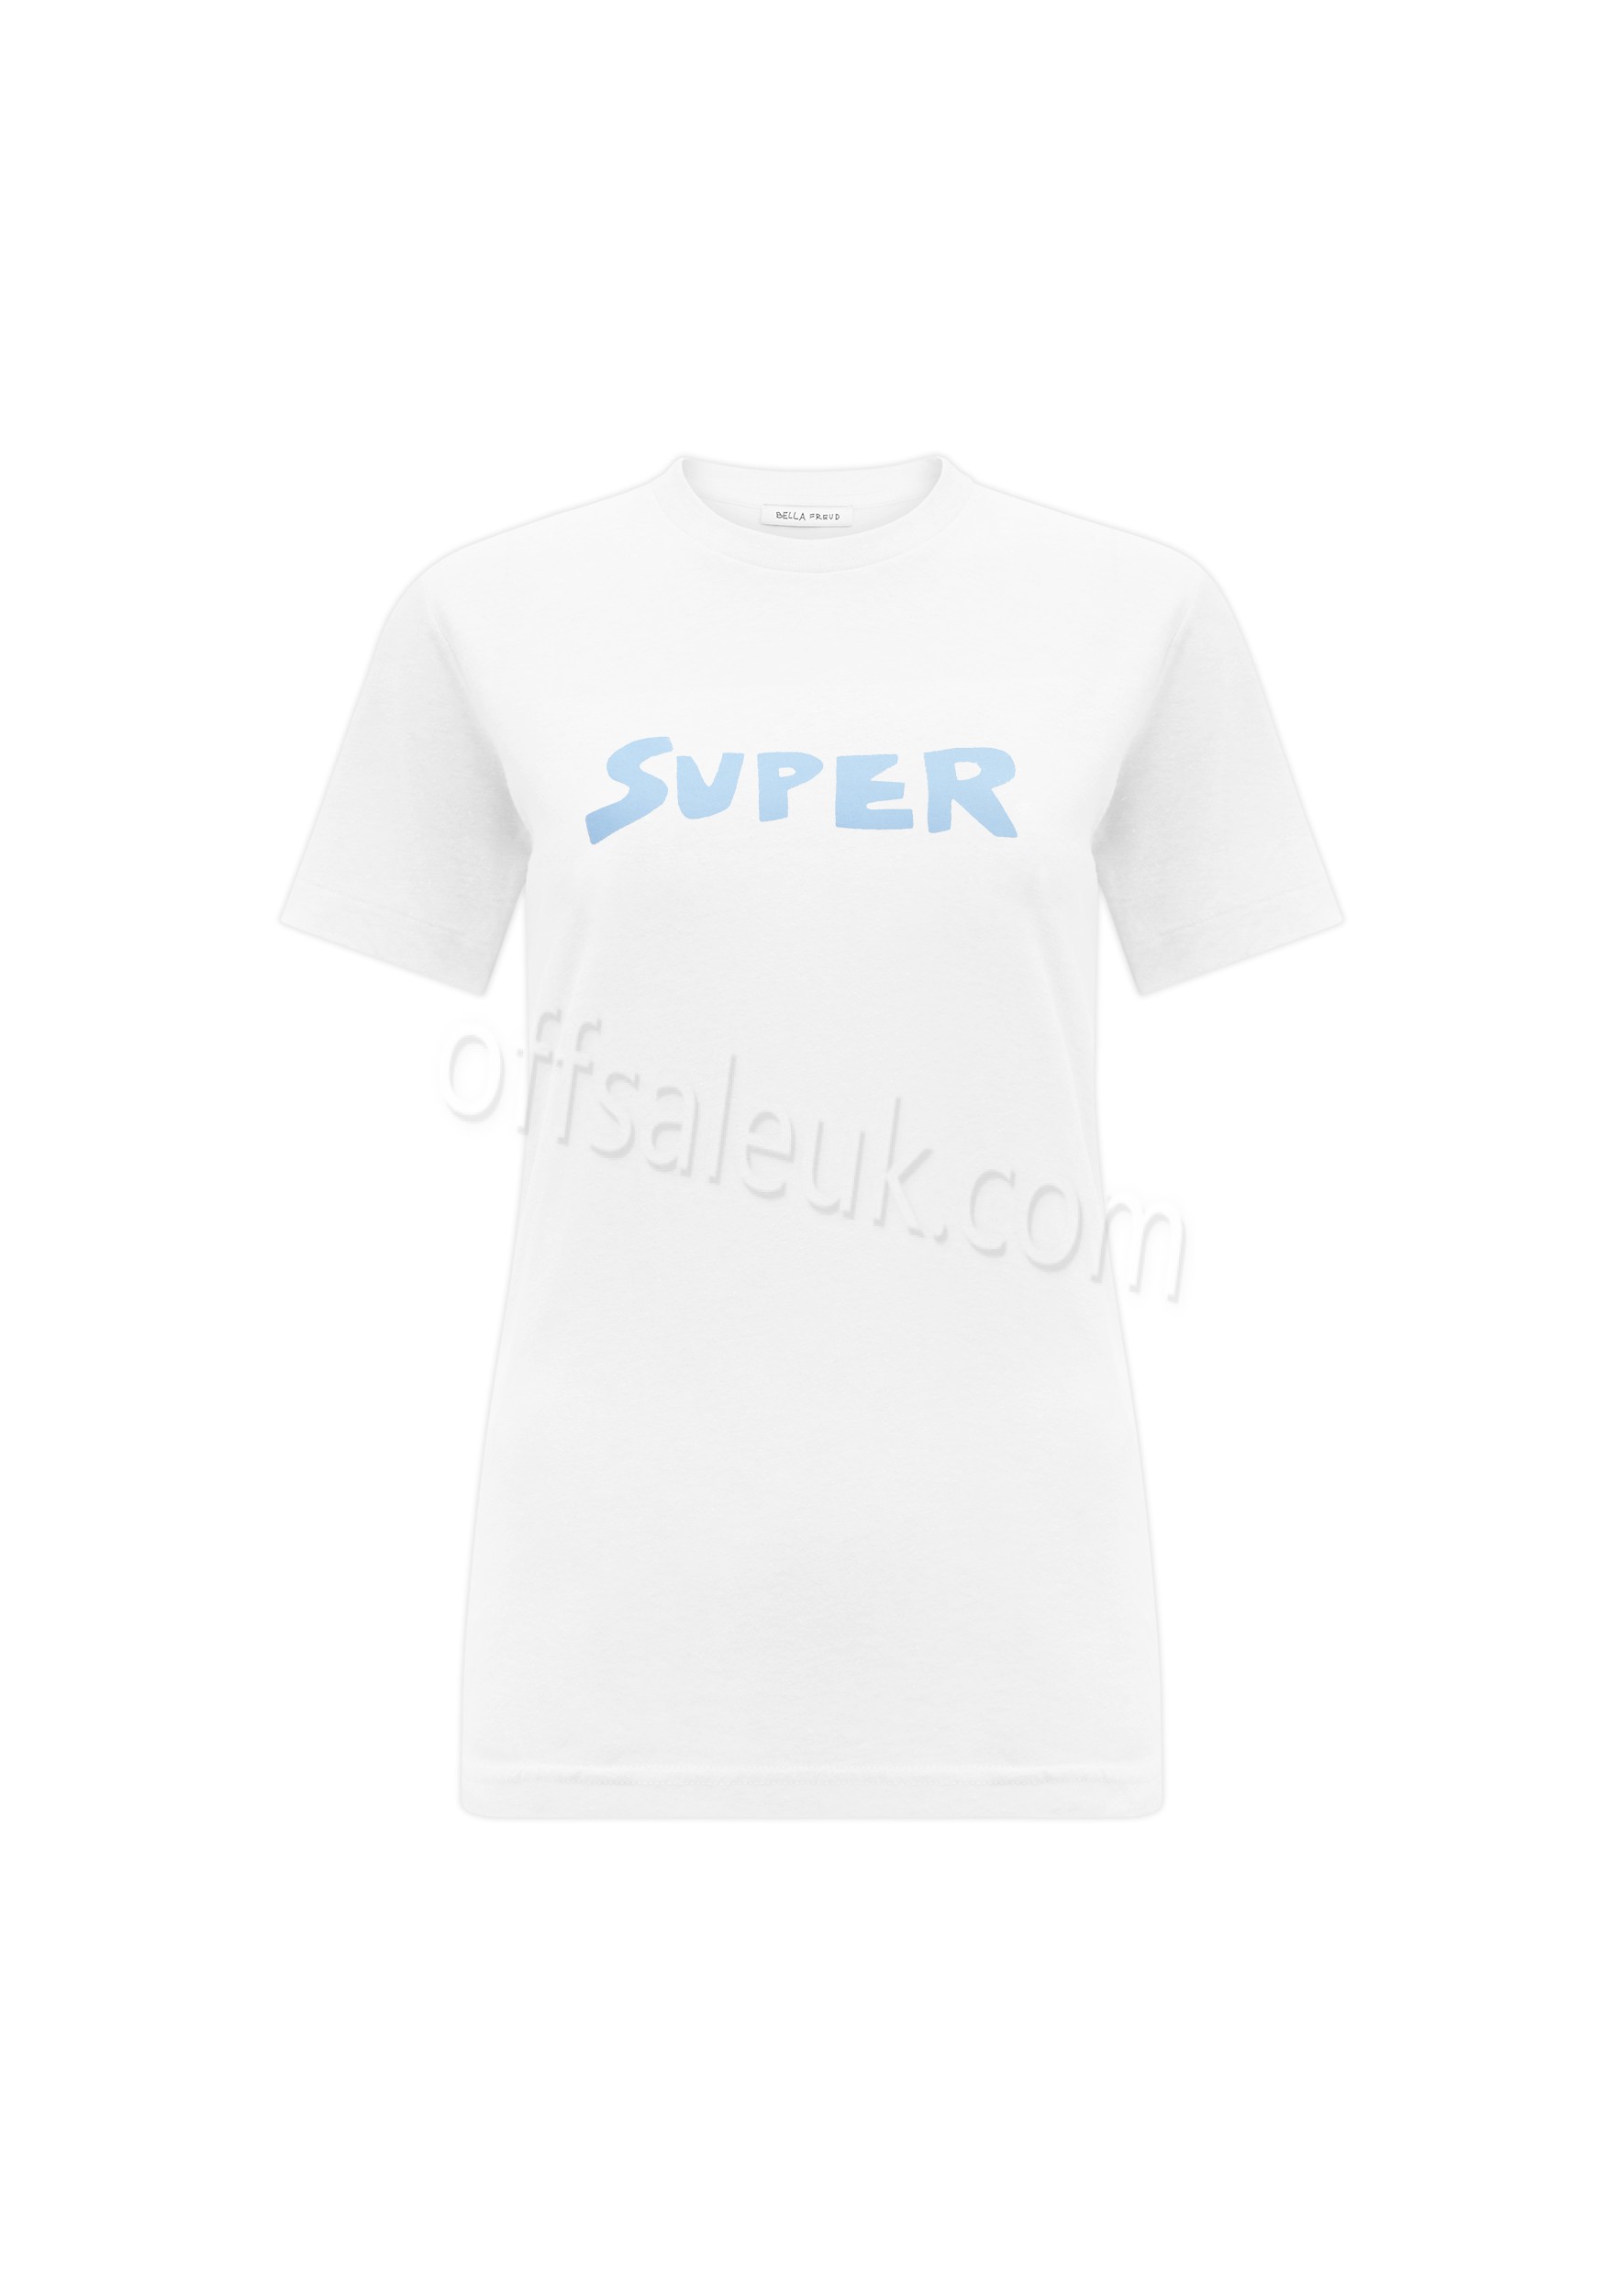 Discount Super T-Shirt - Discount Super T-Shirt